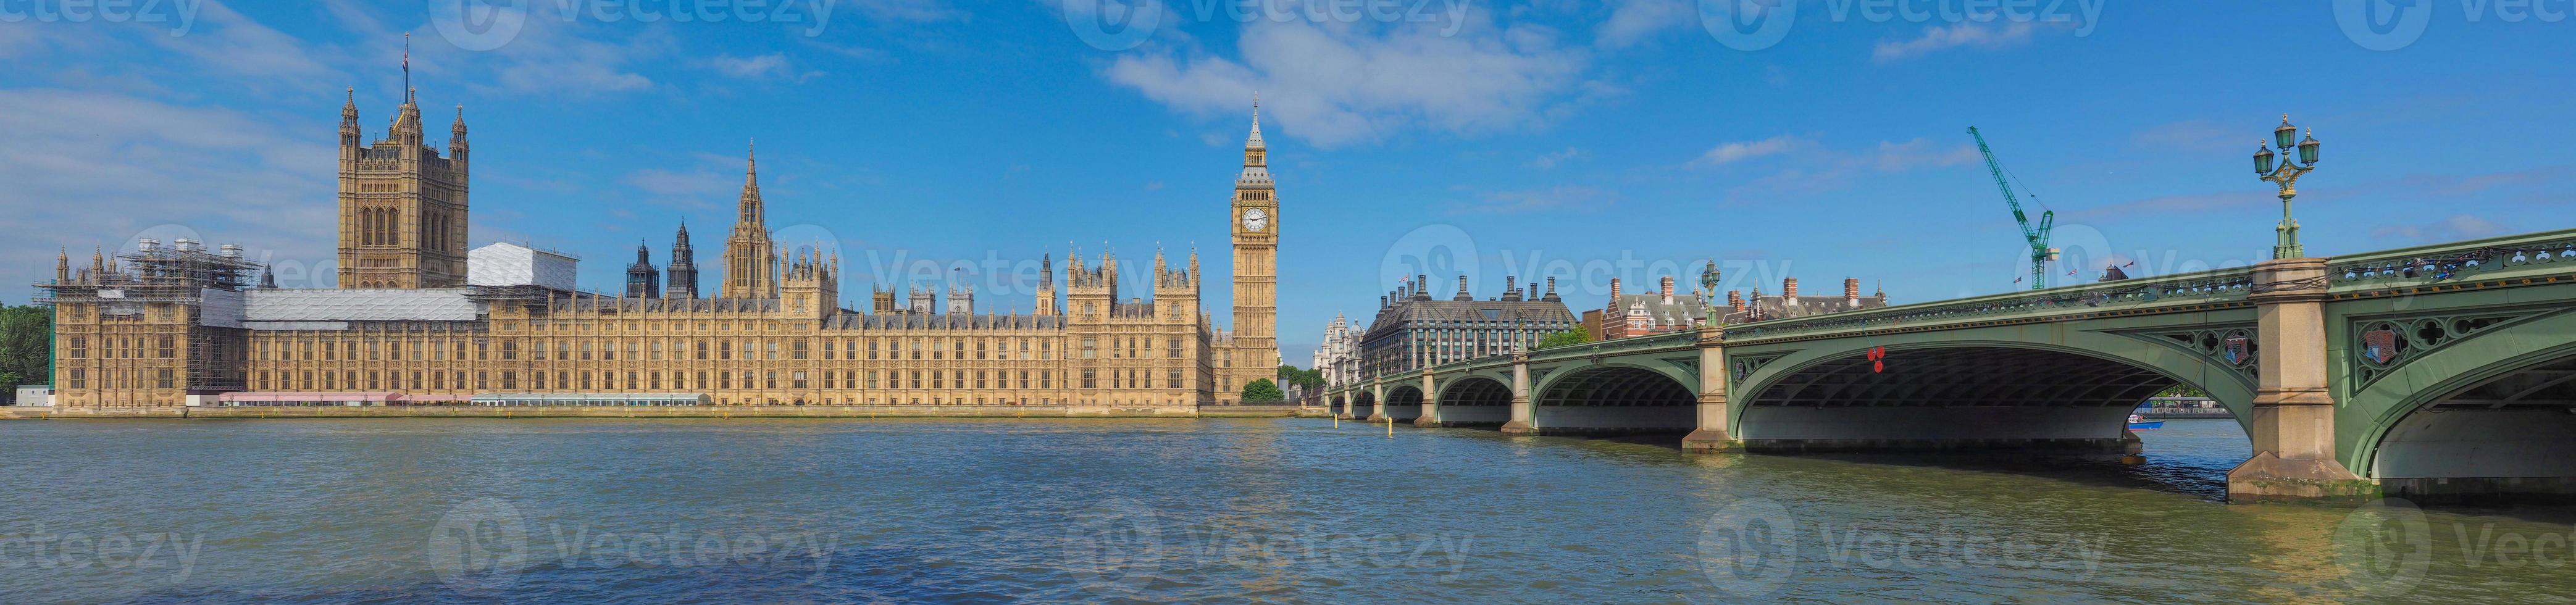 pont de Westminster et chambres du parlement à londres photo